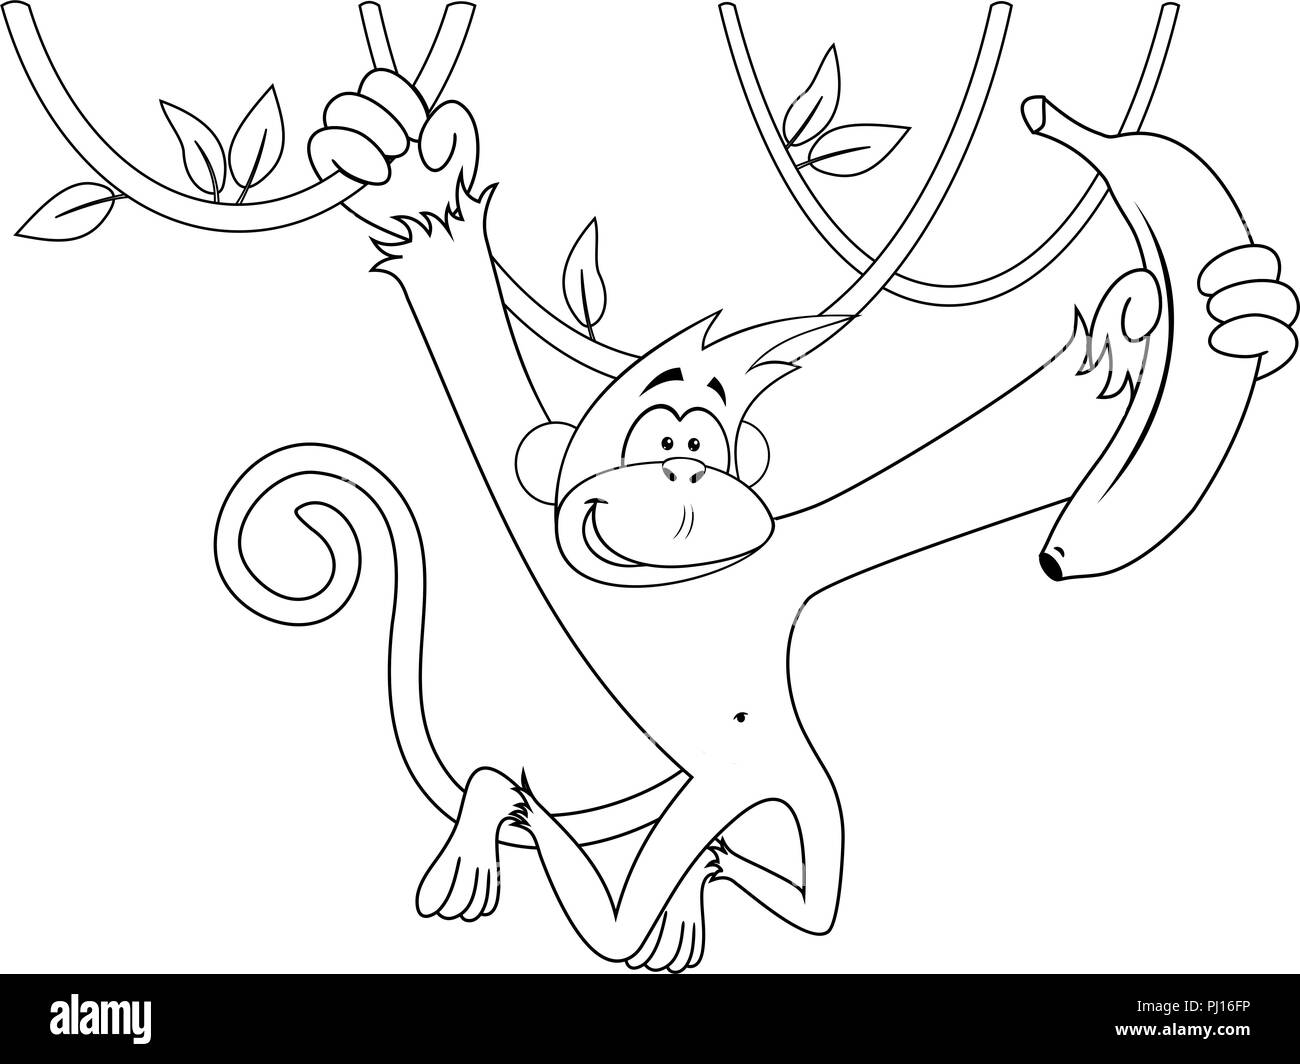 Cartoon happy monkey hanging and holding banana Stock Photo